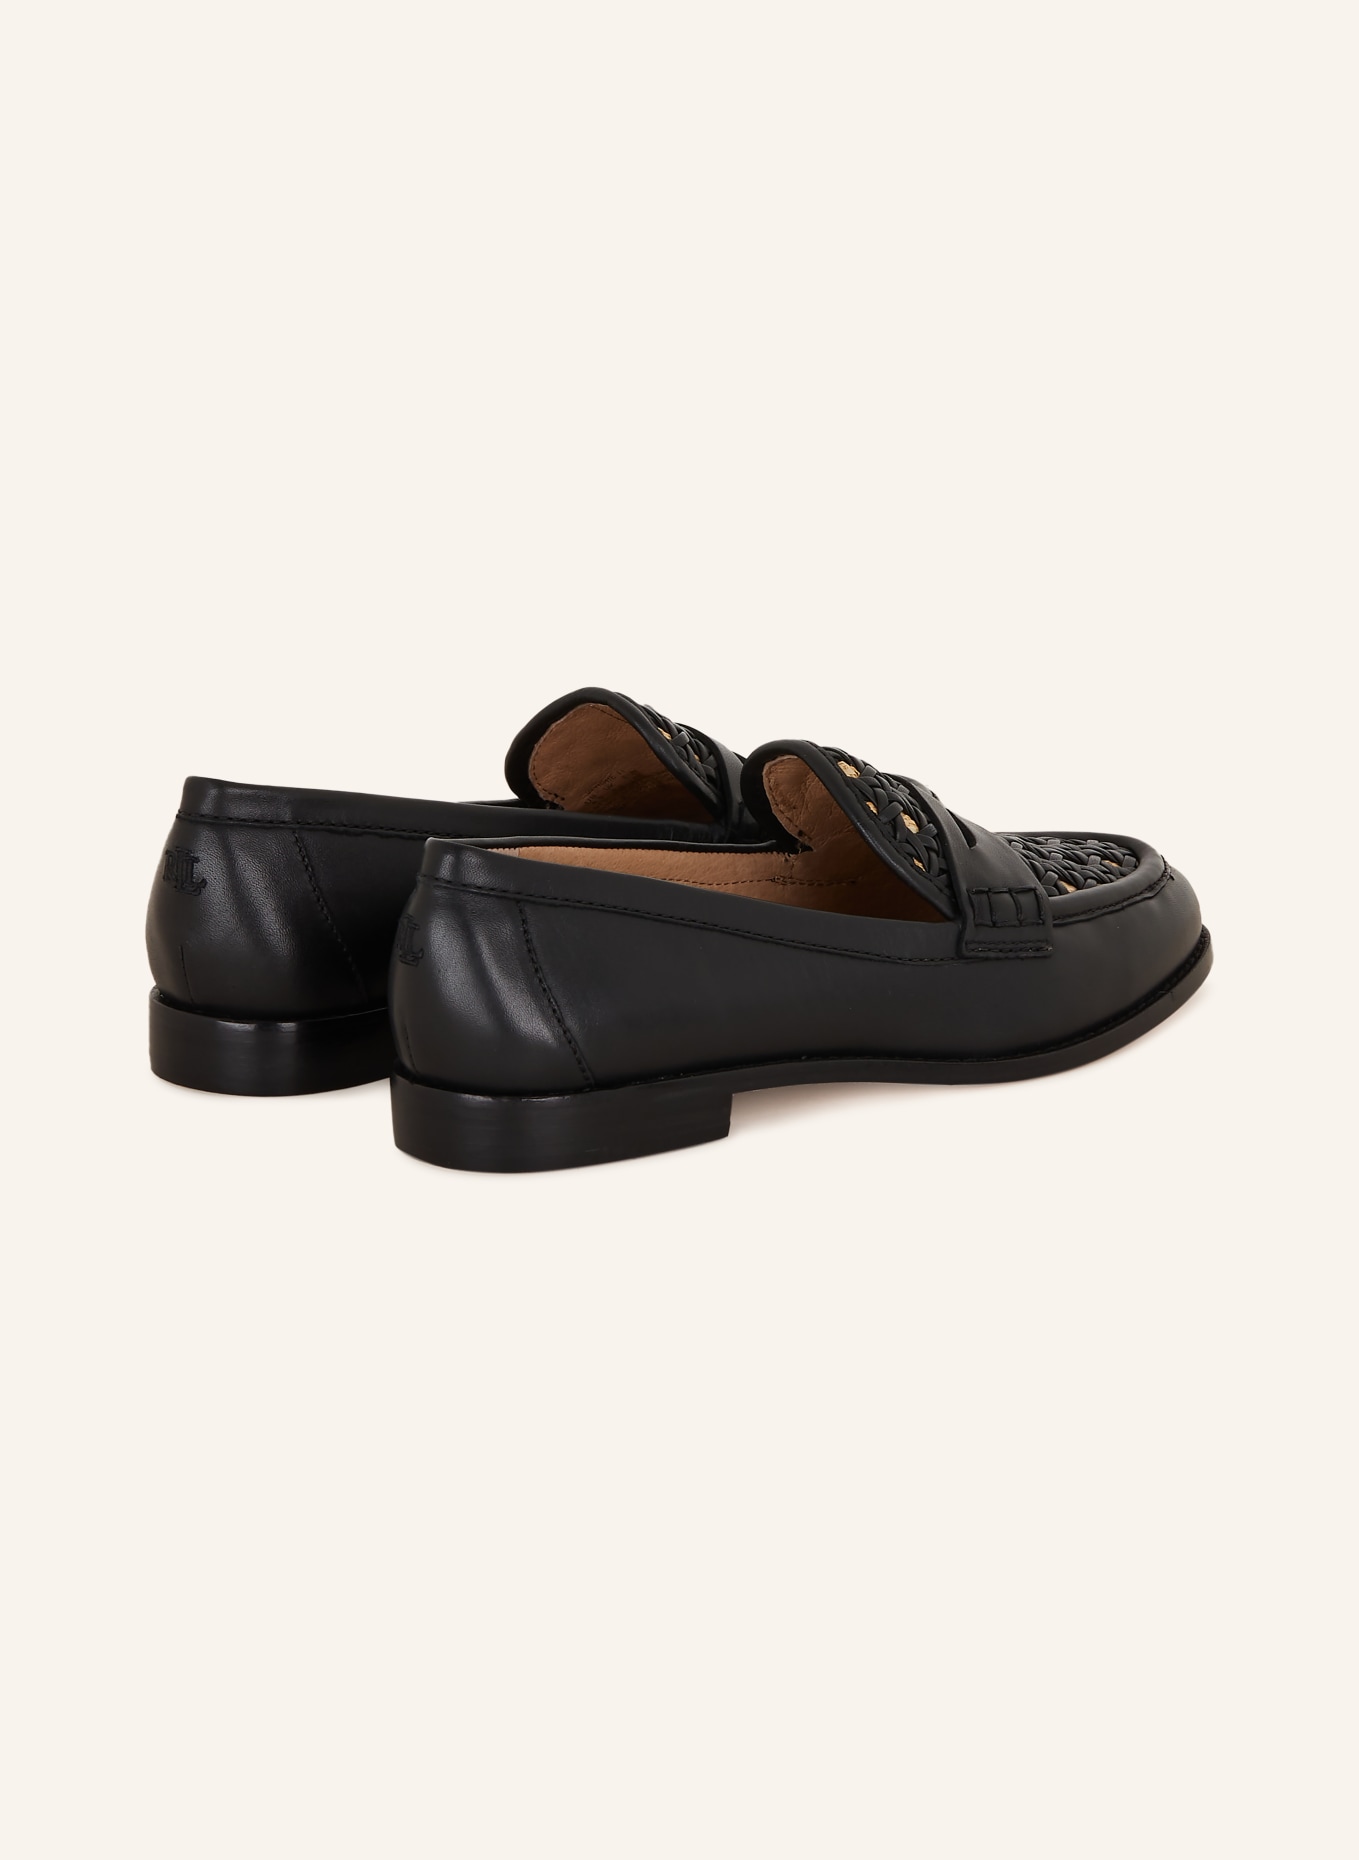 LAUREN RALPH LAUREN Penny loafers WYNNIE II, Color: BLACK (Image 2)